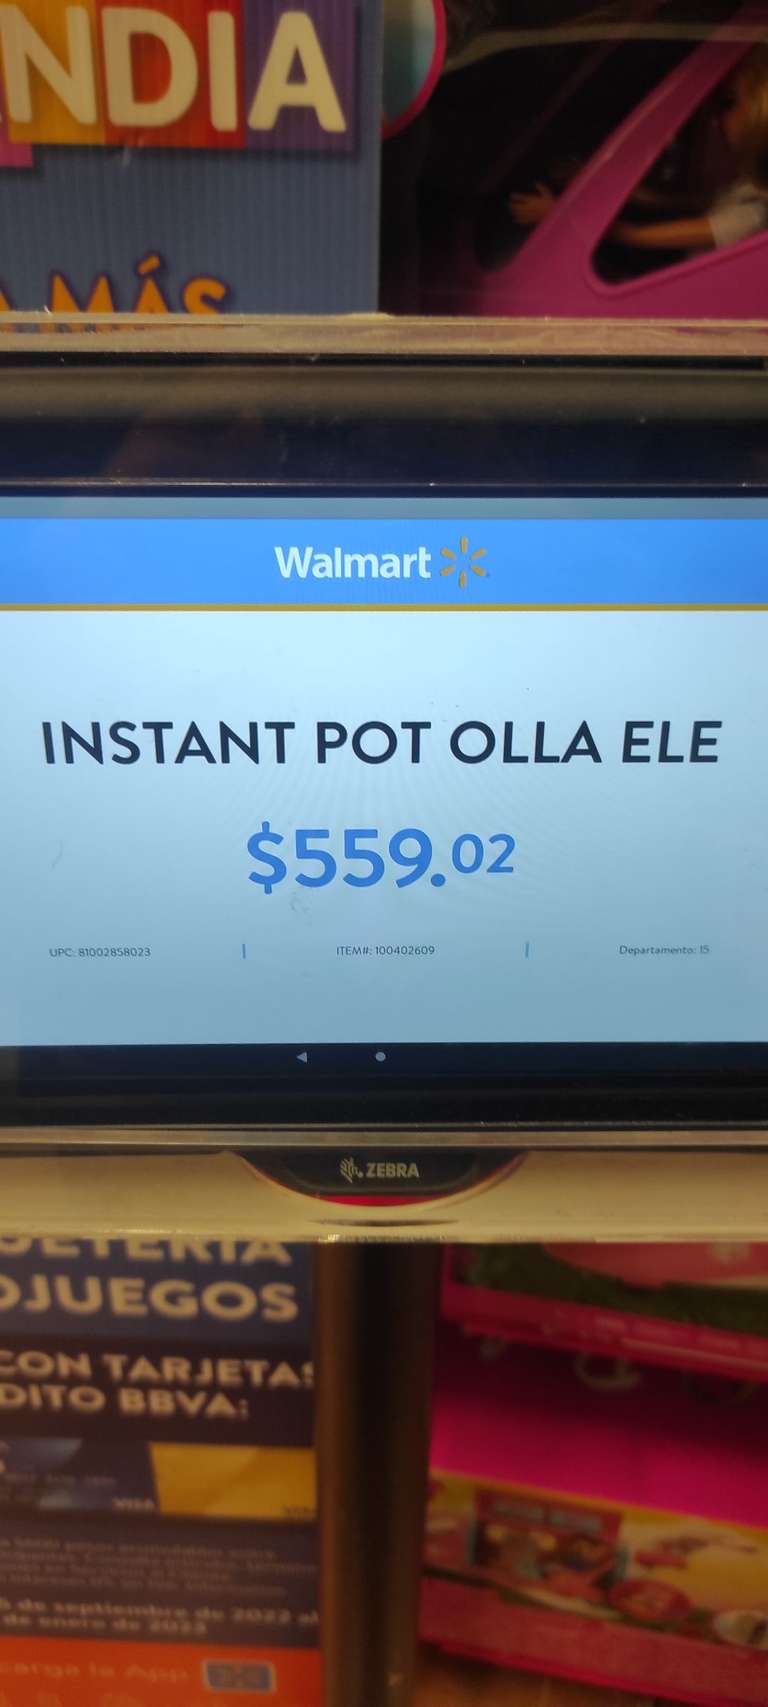 Walmart: Instant pot duo 5.7 L en segunda rebaja